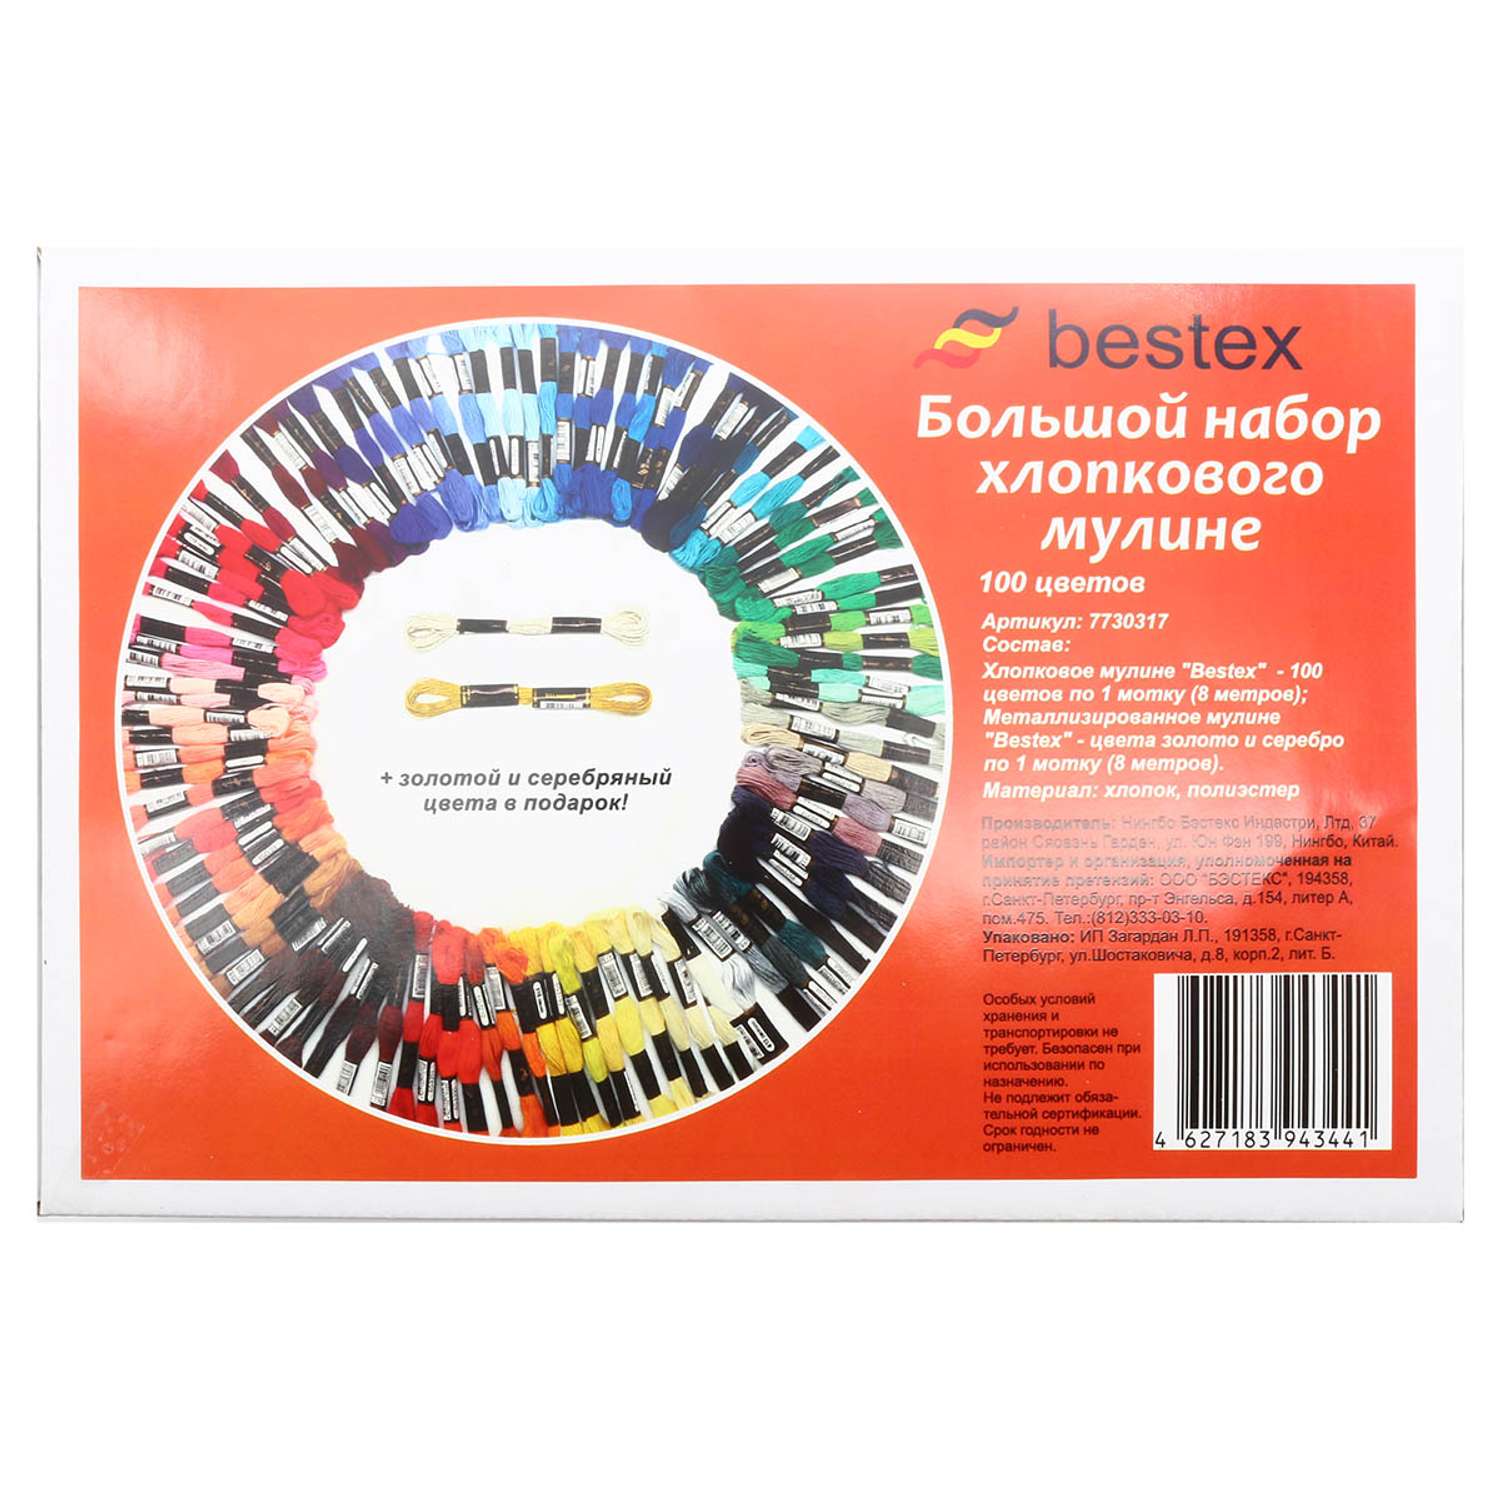 Мулине Bestex хлопковое для вышивания и творчества большой набор 100 цветов - фото 4